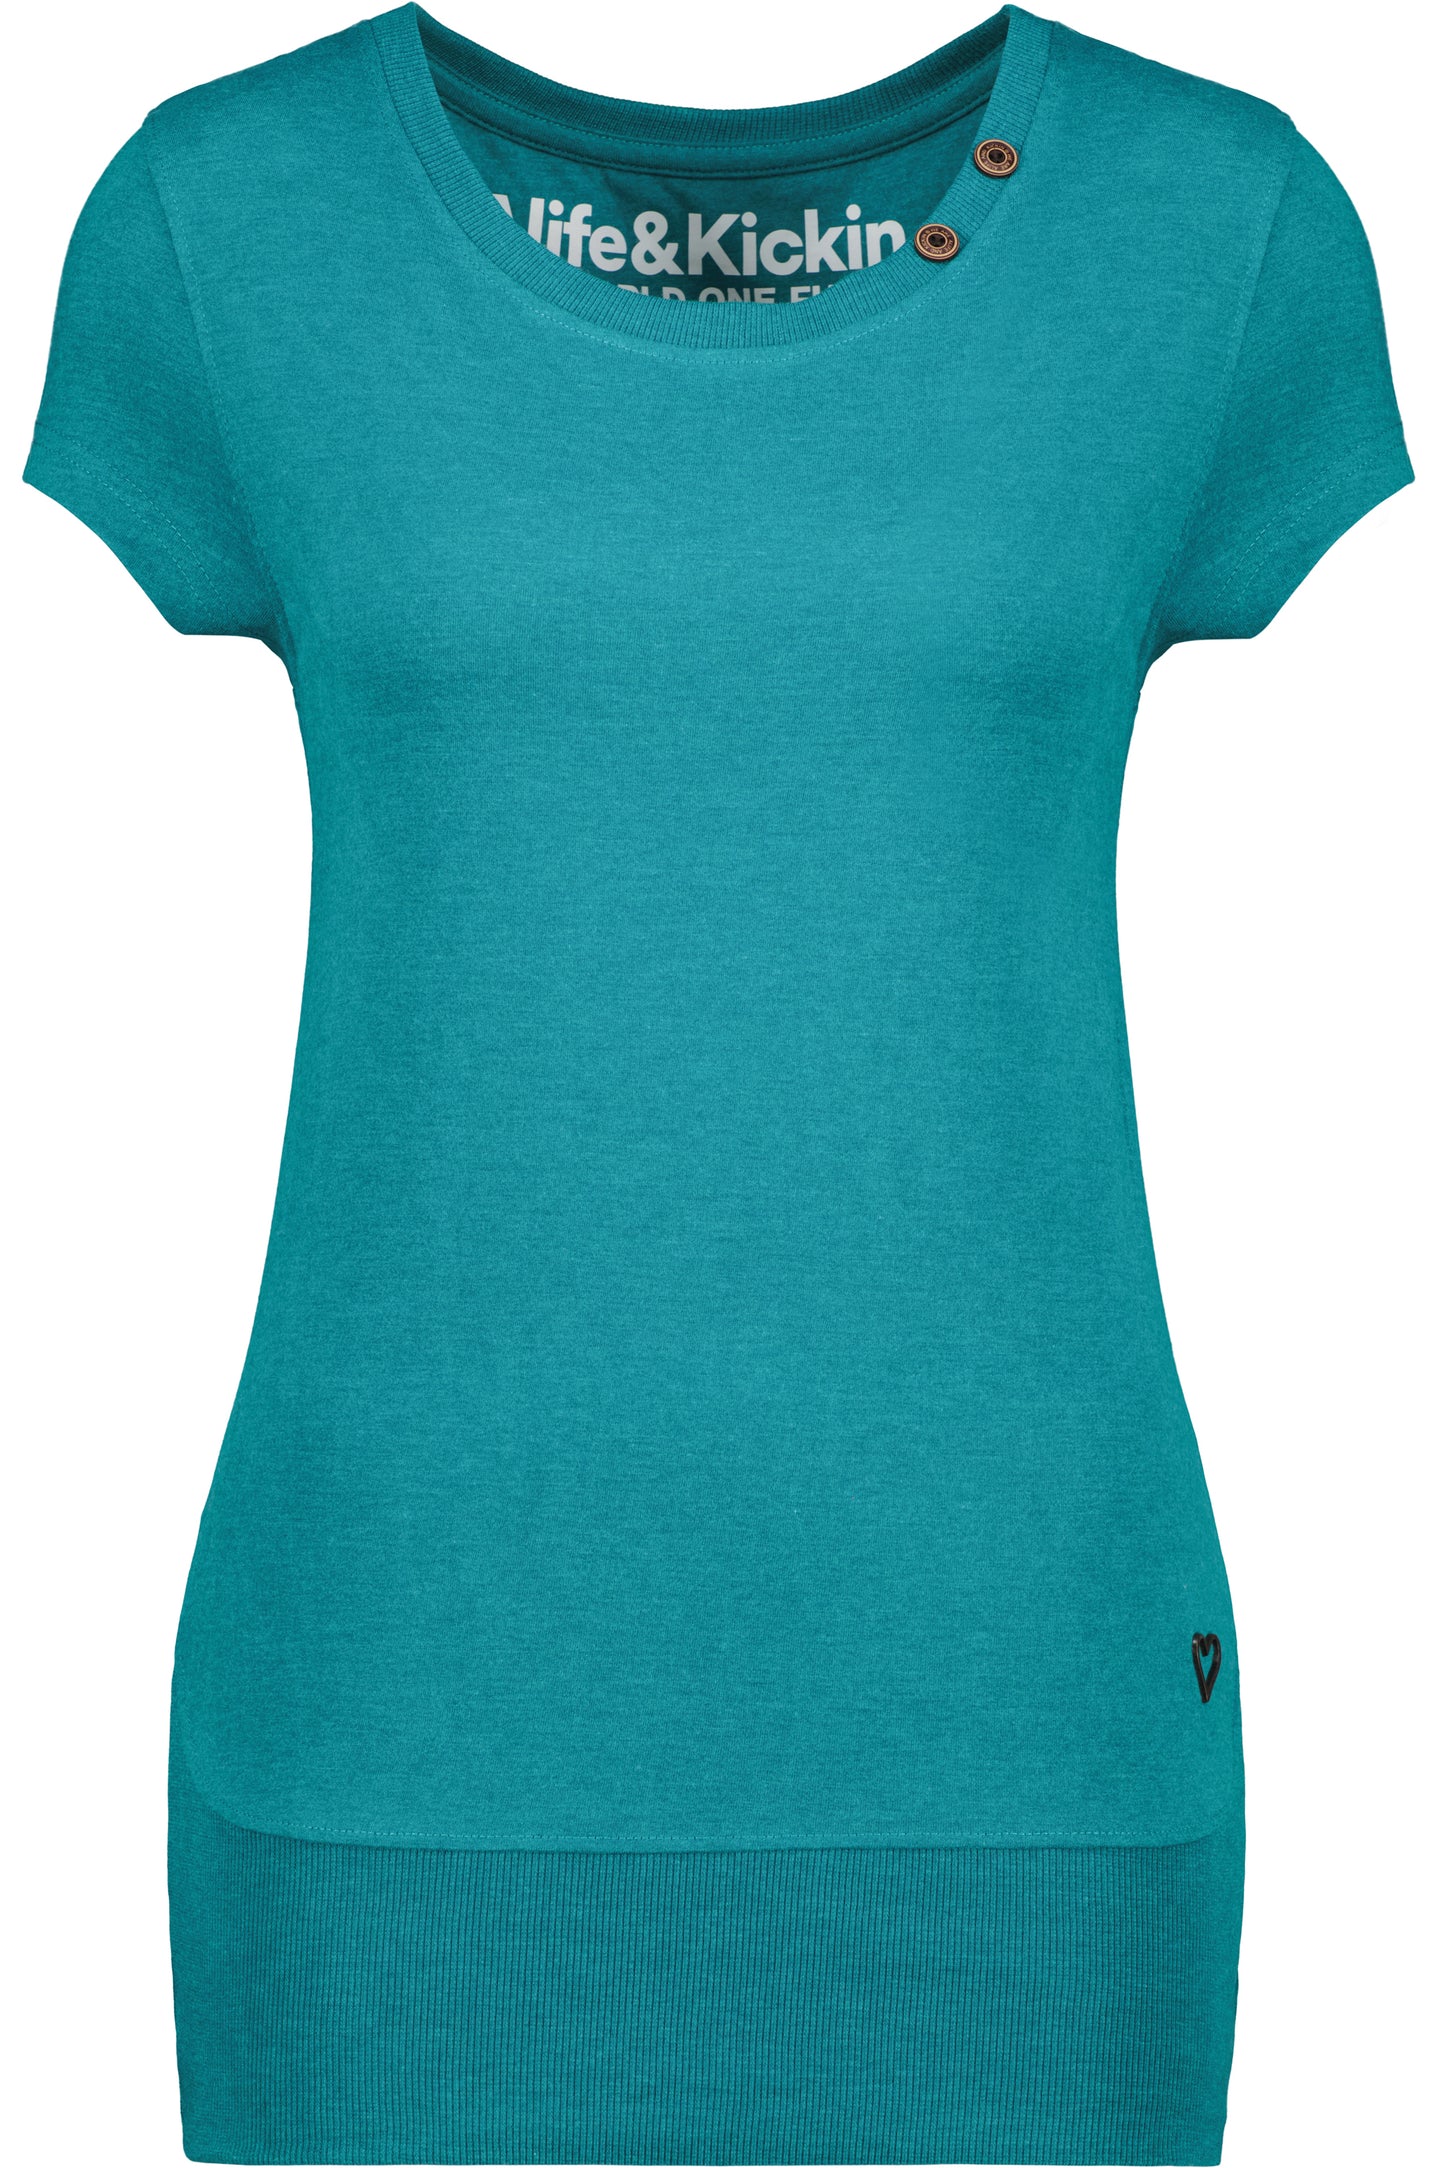 CocoAK A T-Shirt von Alife and Kickin: Farbenfroh und modisch Dunkelgrün